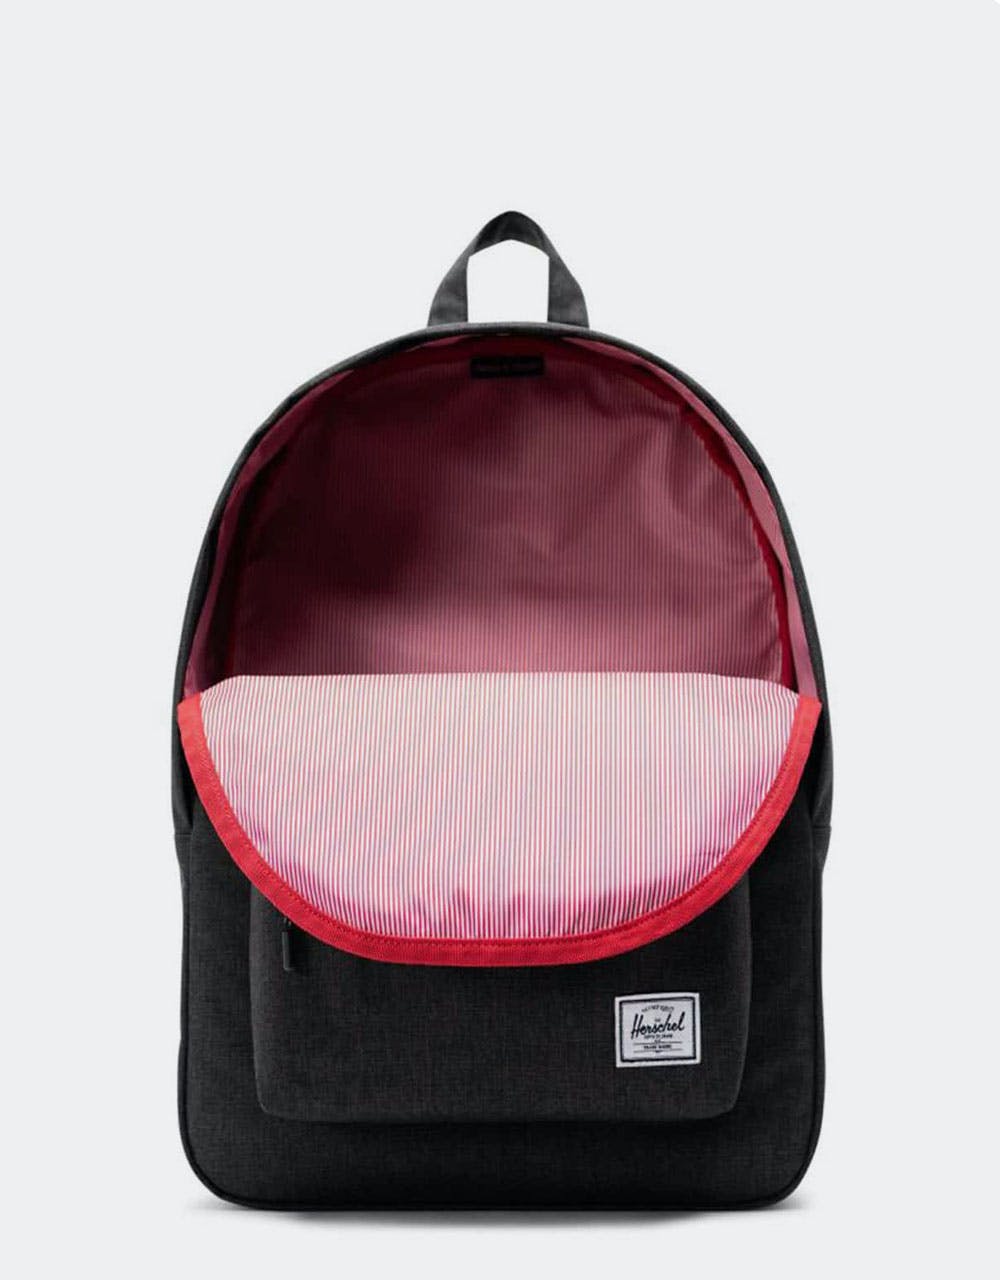 Herschel Supply Co. Classic Backpack - Black Crosshatch